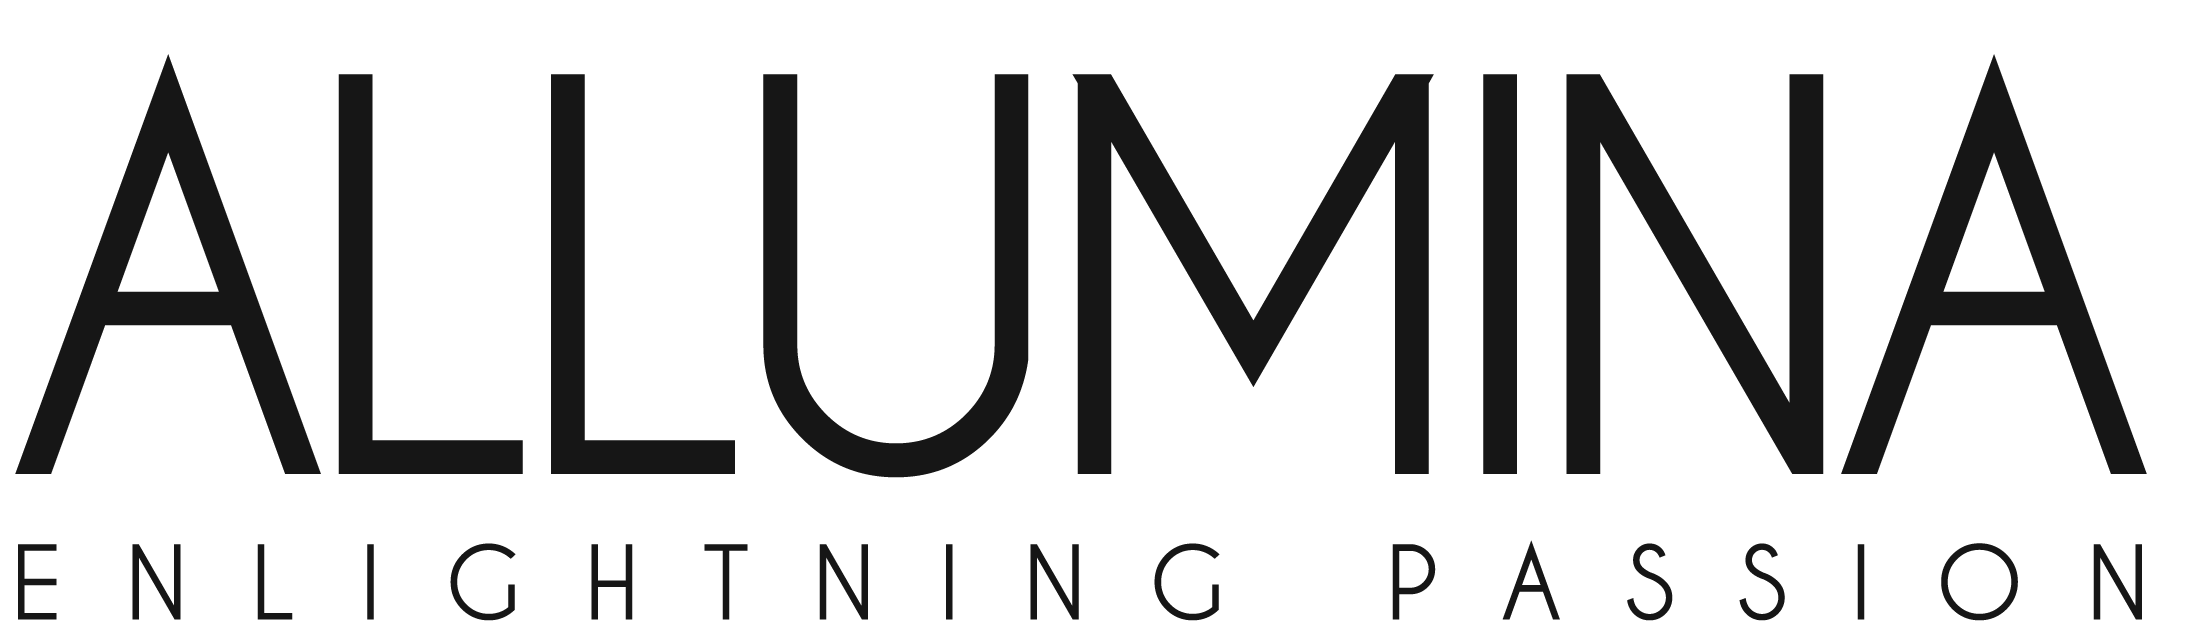 allumina_logo